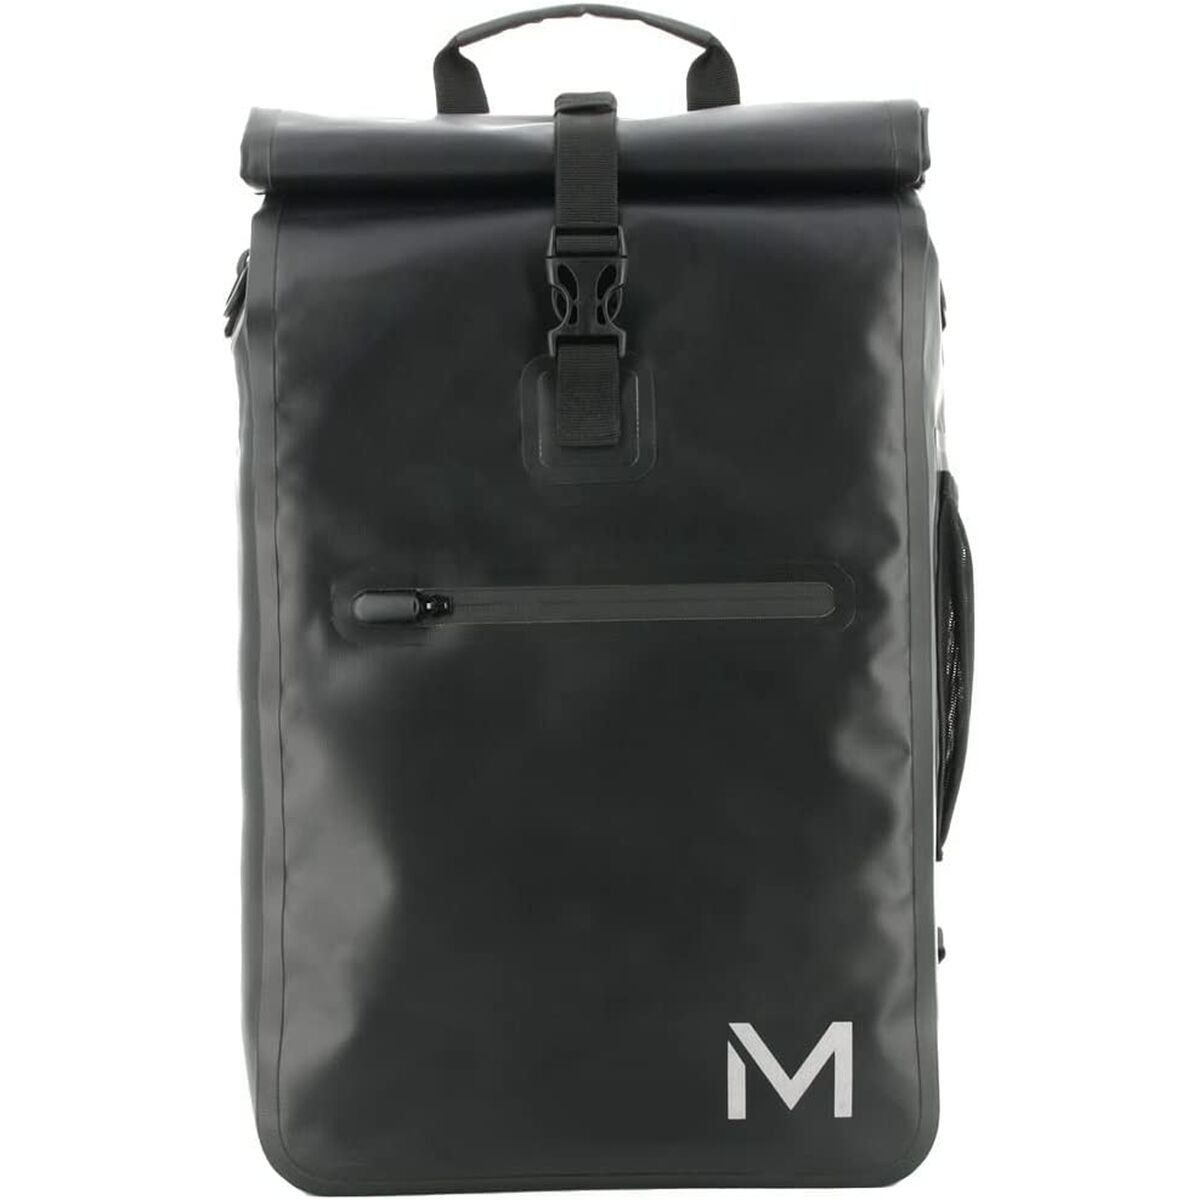 Laptop Backpack Mobilis 070001 Black